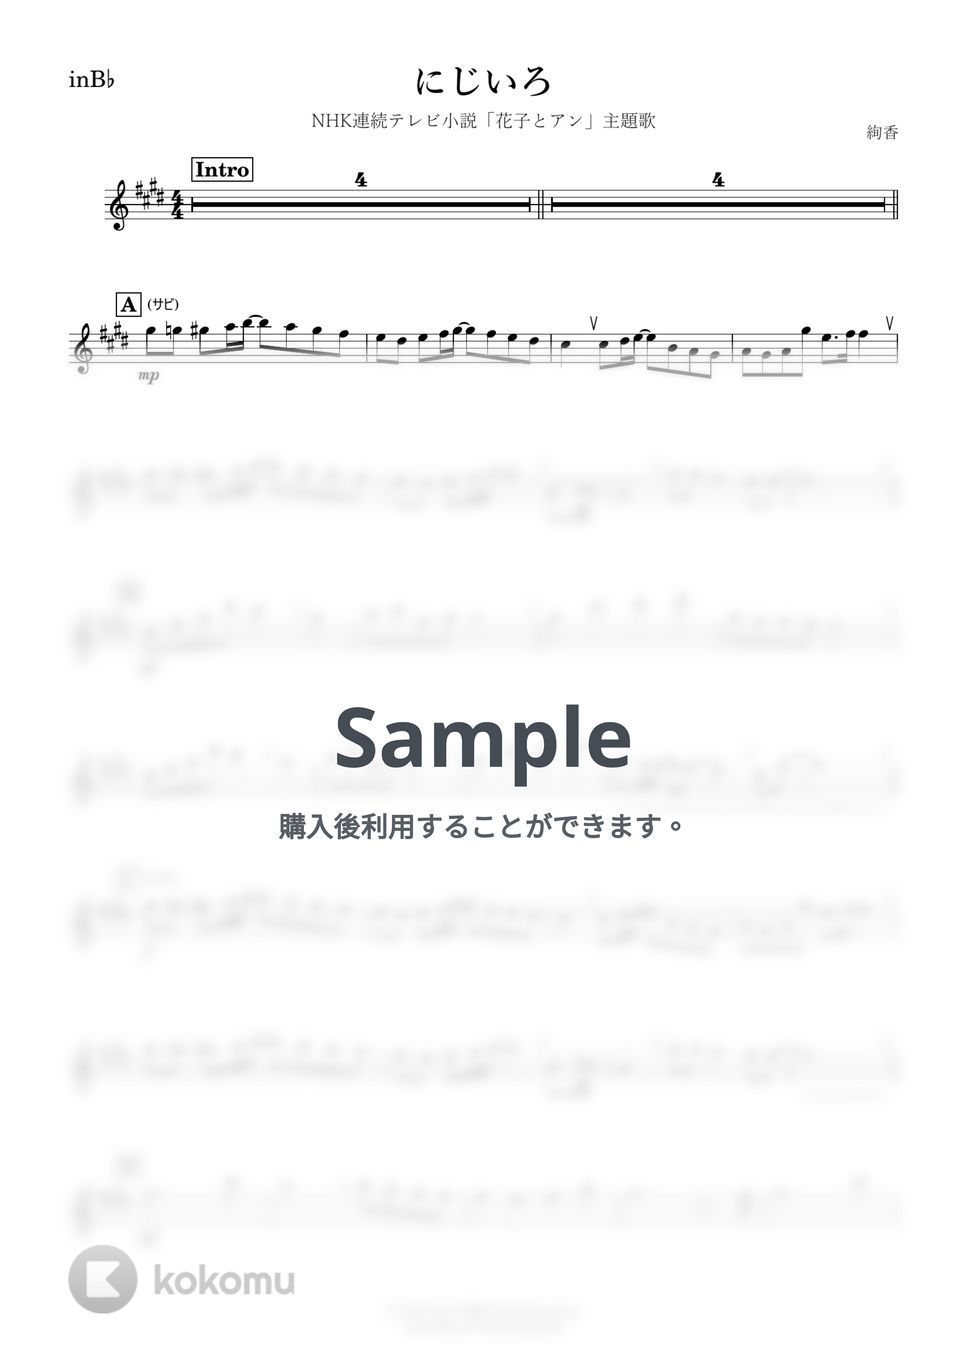 絢香 - にじいろ (B♭) by kanamusic